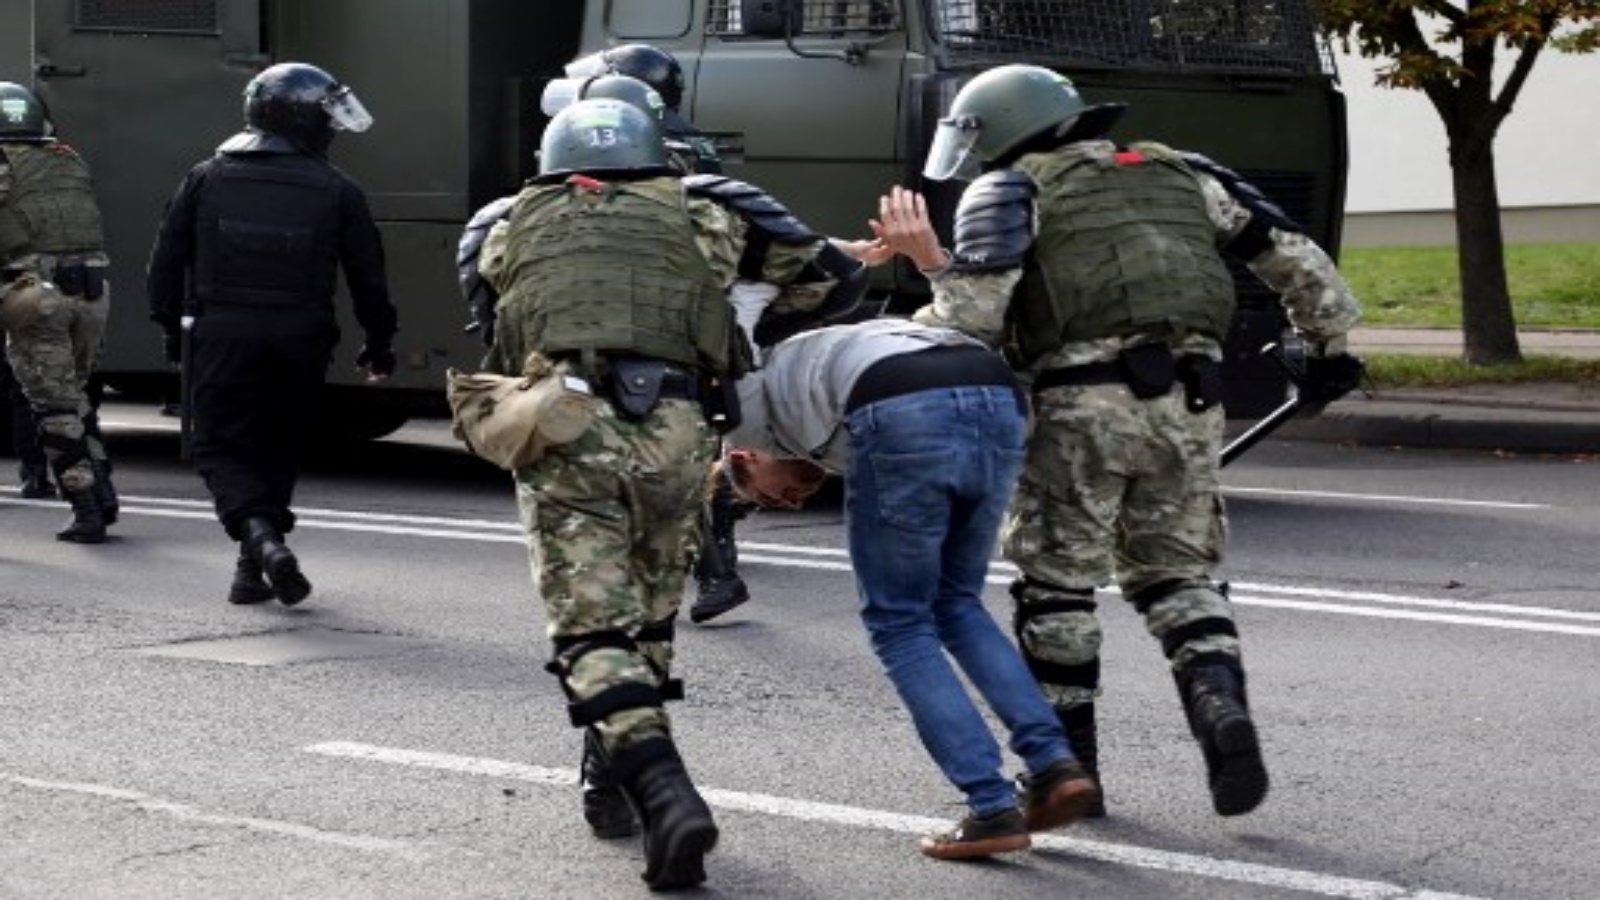 ضباط إنفاذ القانون يعتقلون رجلًا خلال مسيرة احتجاجية على نتائج الانتخابات الرئاسية في مينسك في 13 سبتمبر 2020